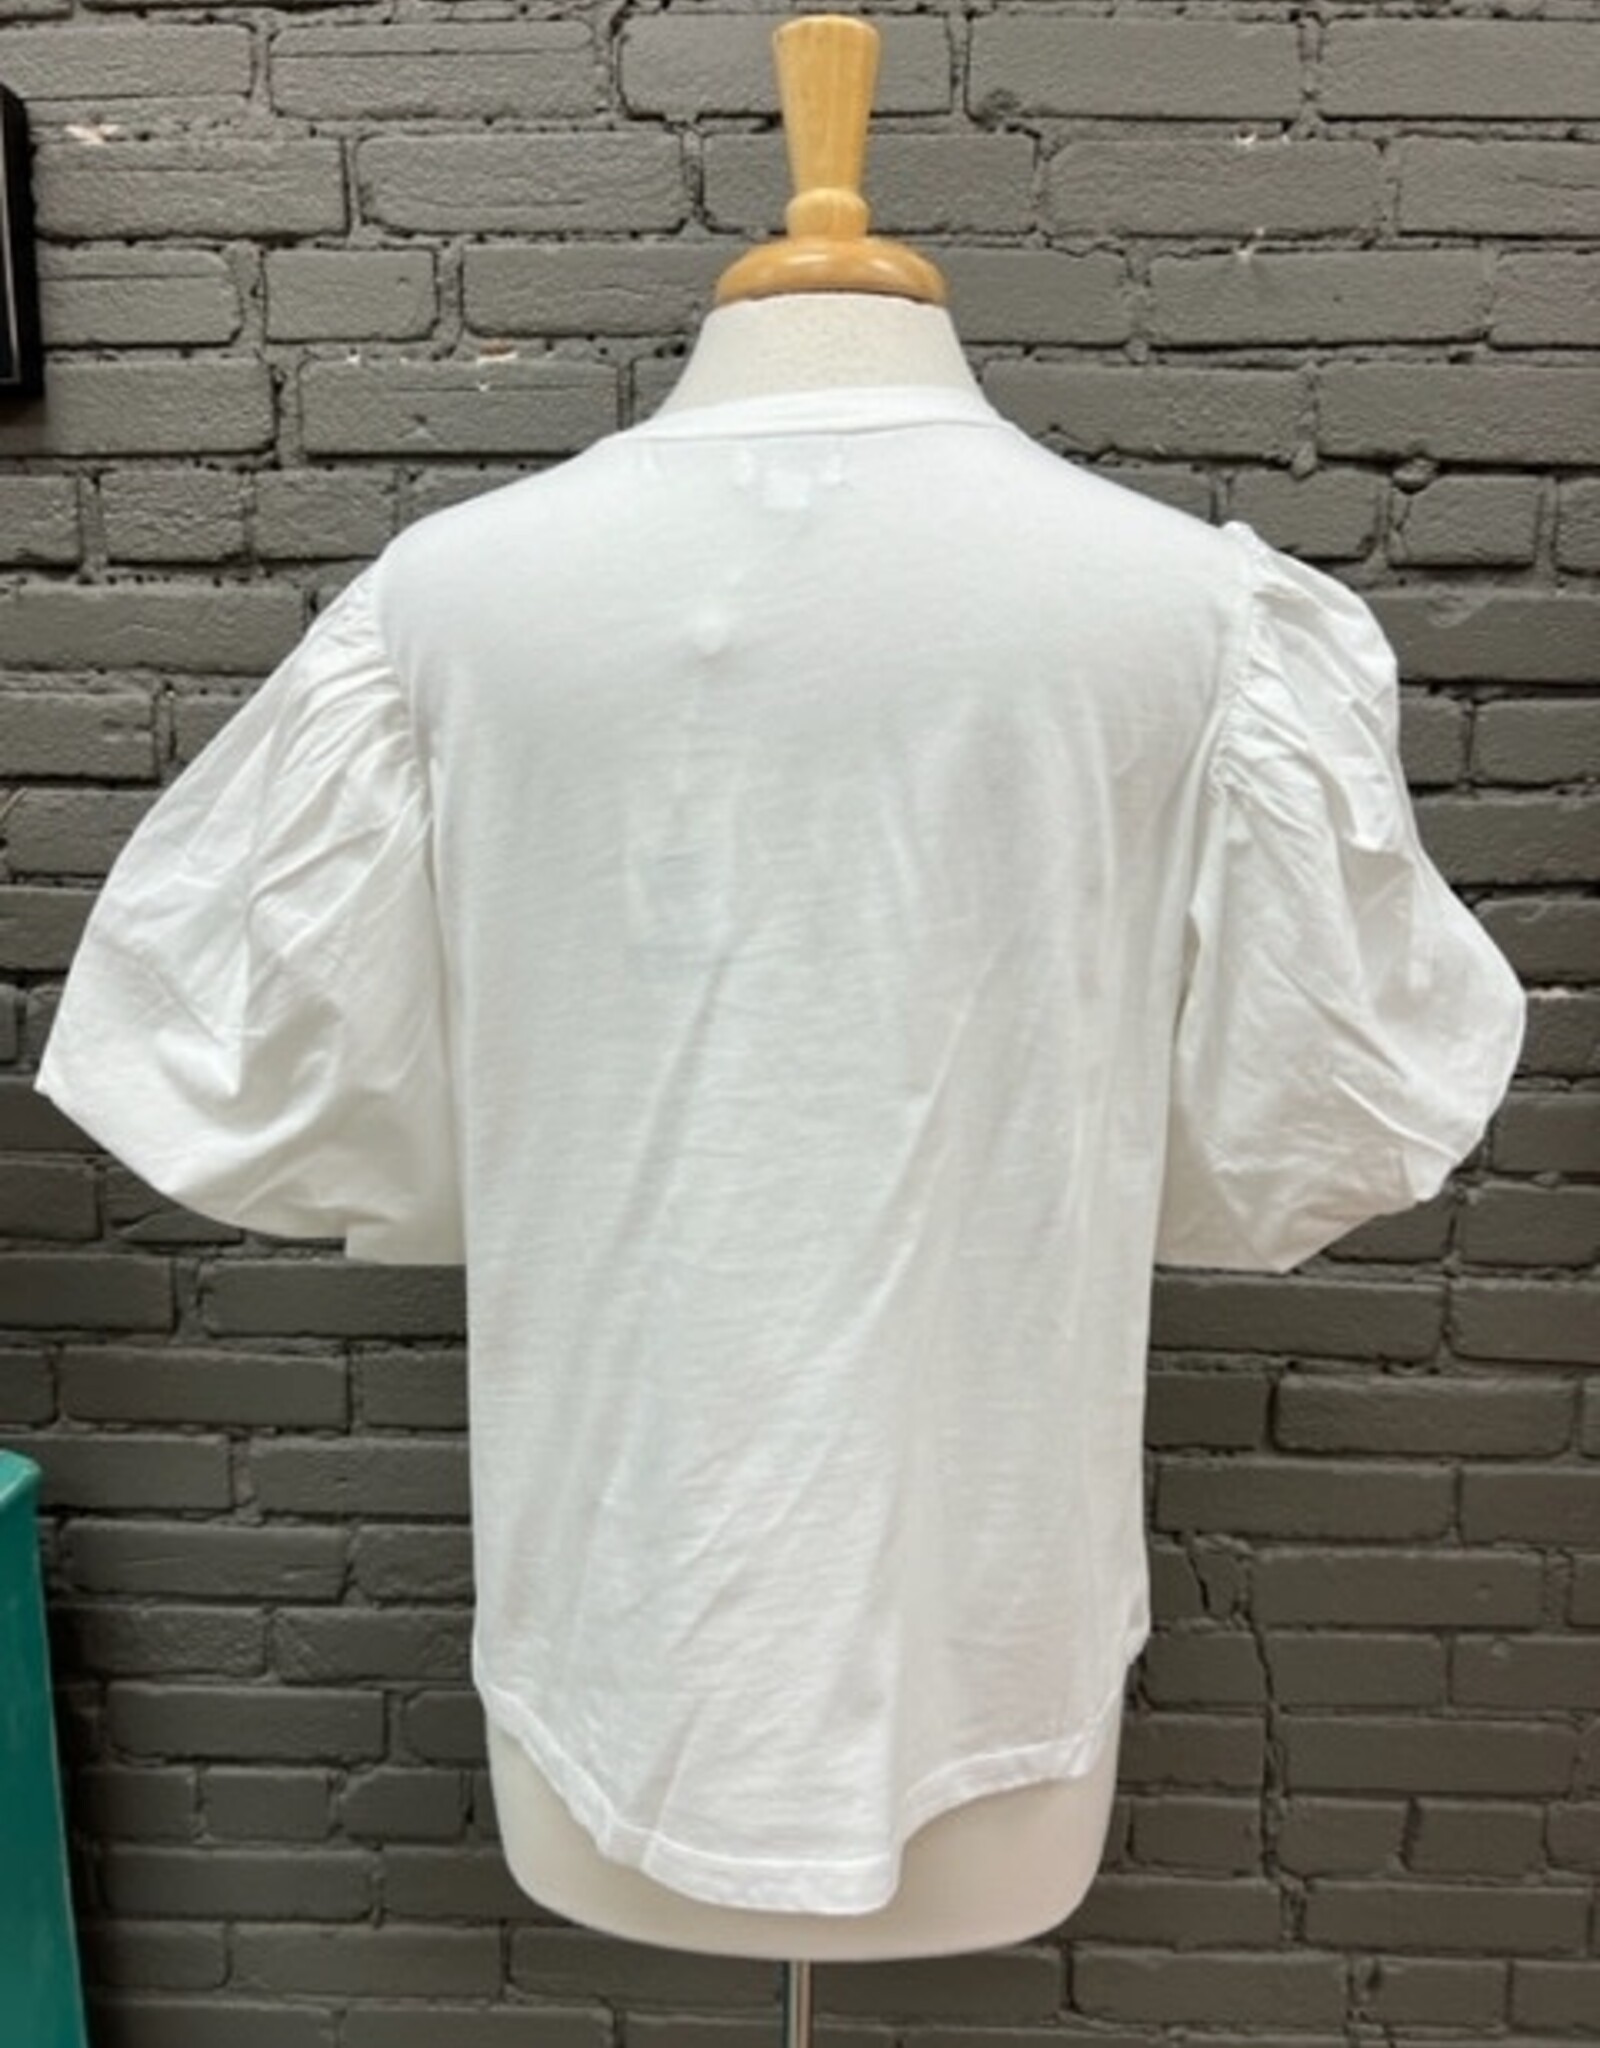 Shirt Aurora White Puff Sleeve Top